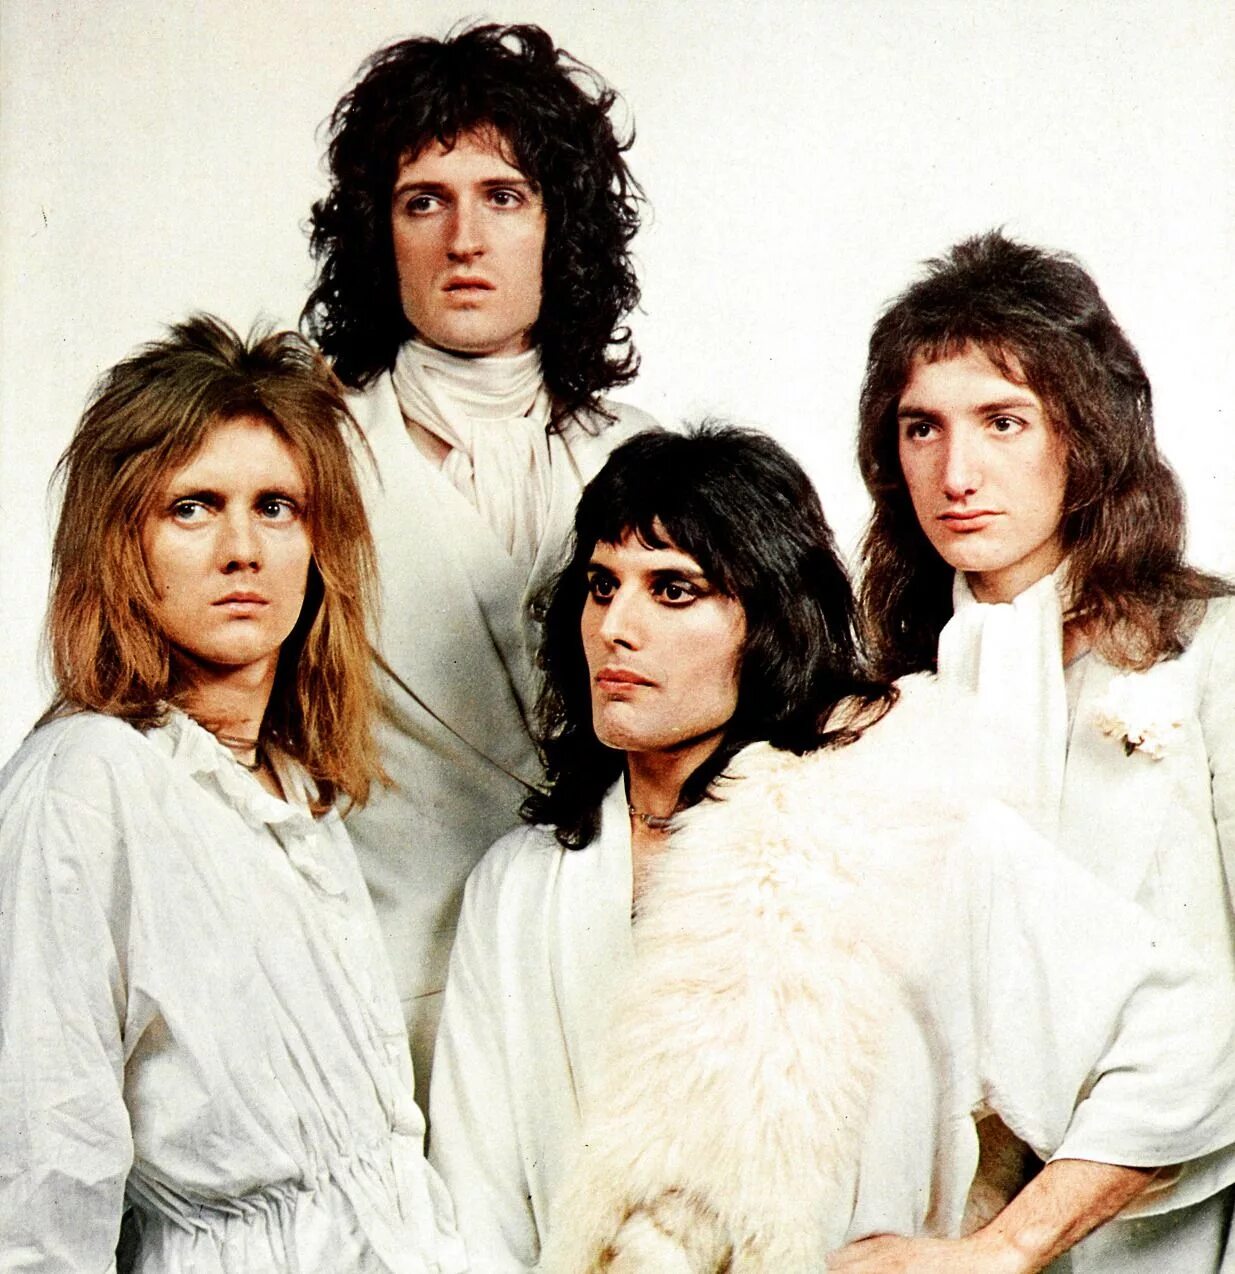 Queen слушать в качестве. Группа Квин 1970. Группа Квин в молодости. Группа Queen 70s. Группа Queen 1975.